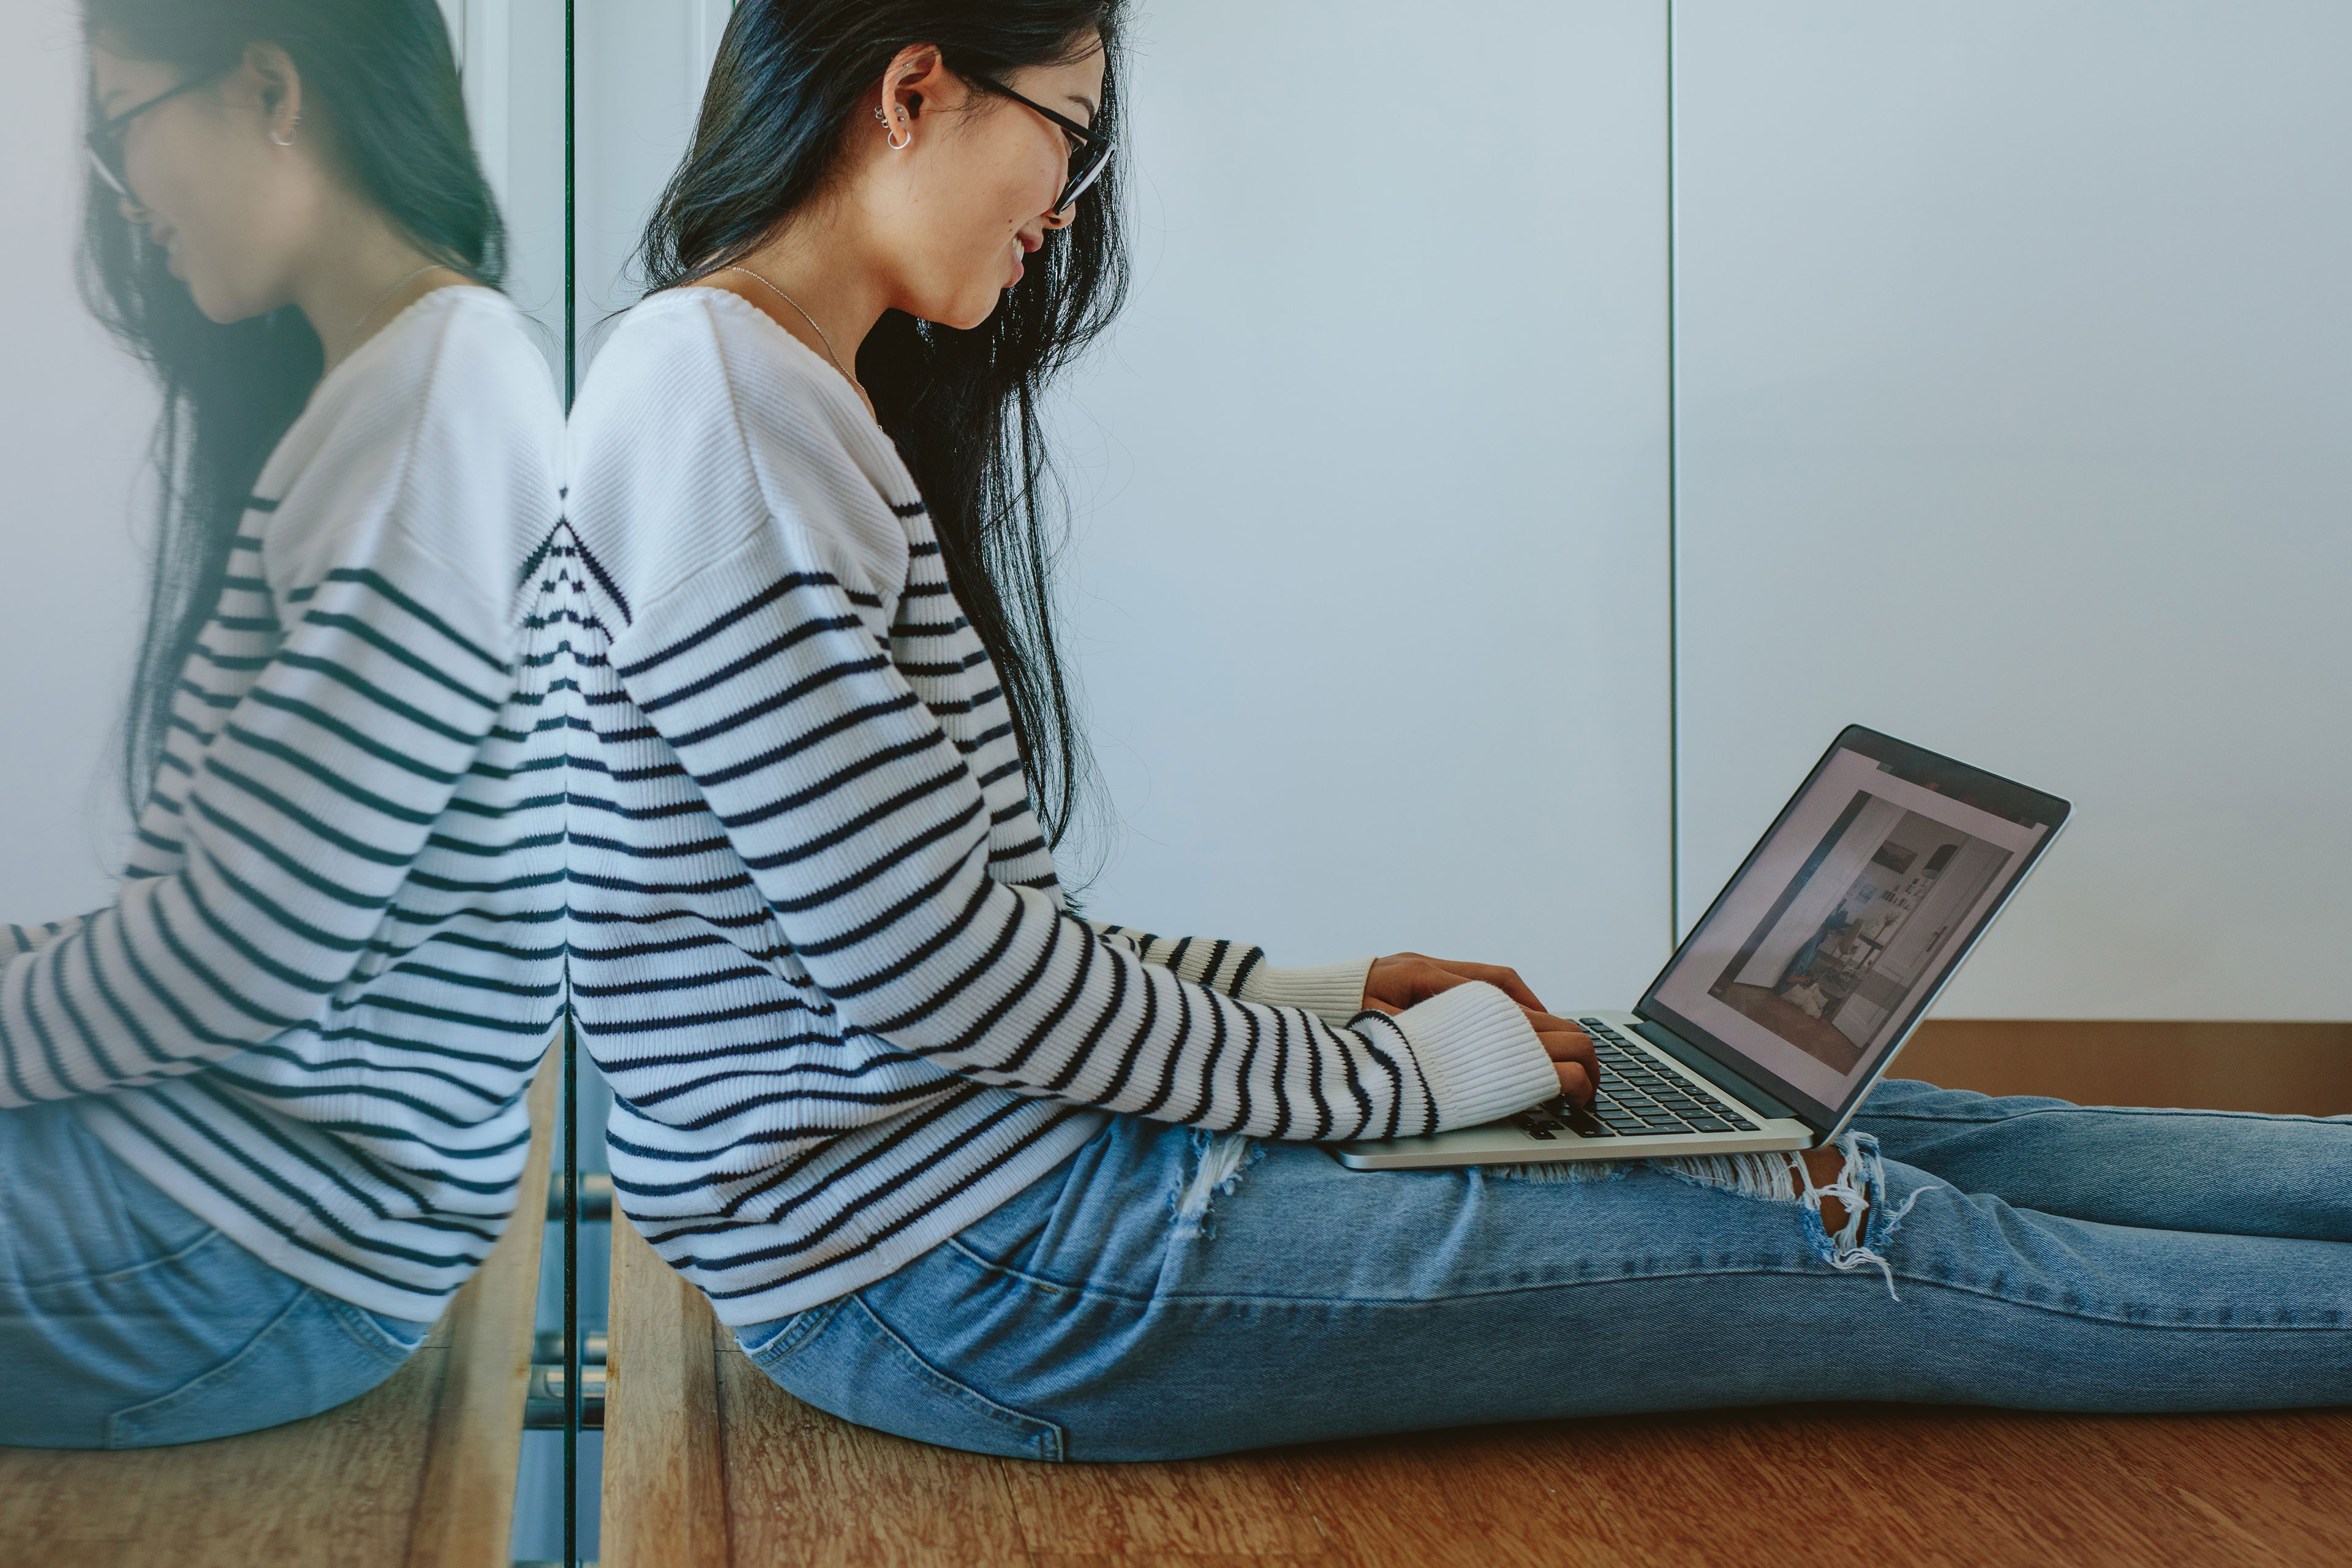 Jeune femme portant un haut à rayures, assise par terre avec un ordinateur portable